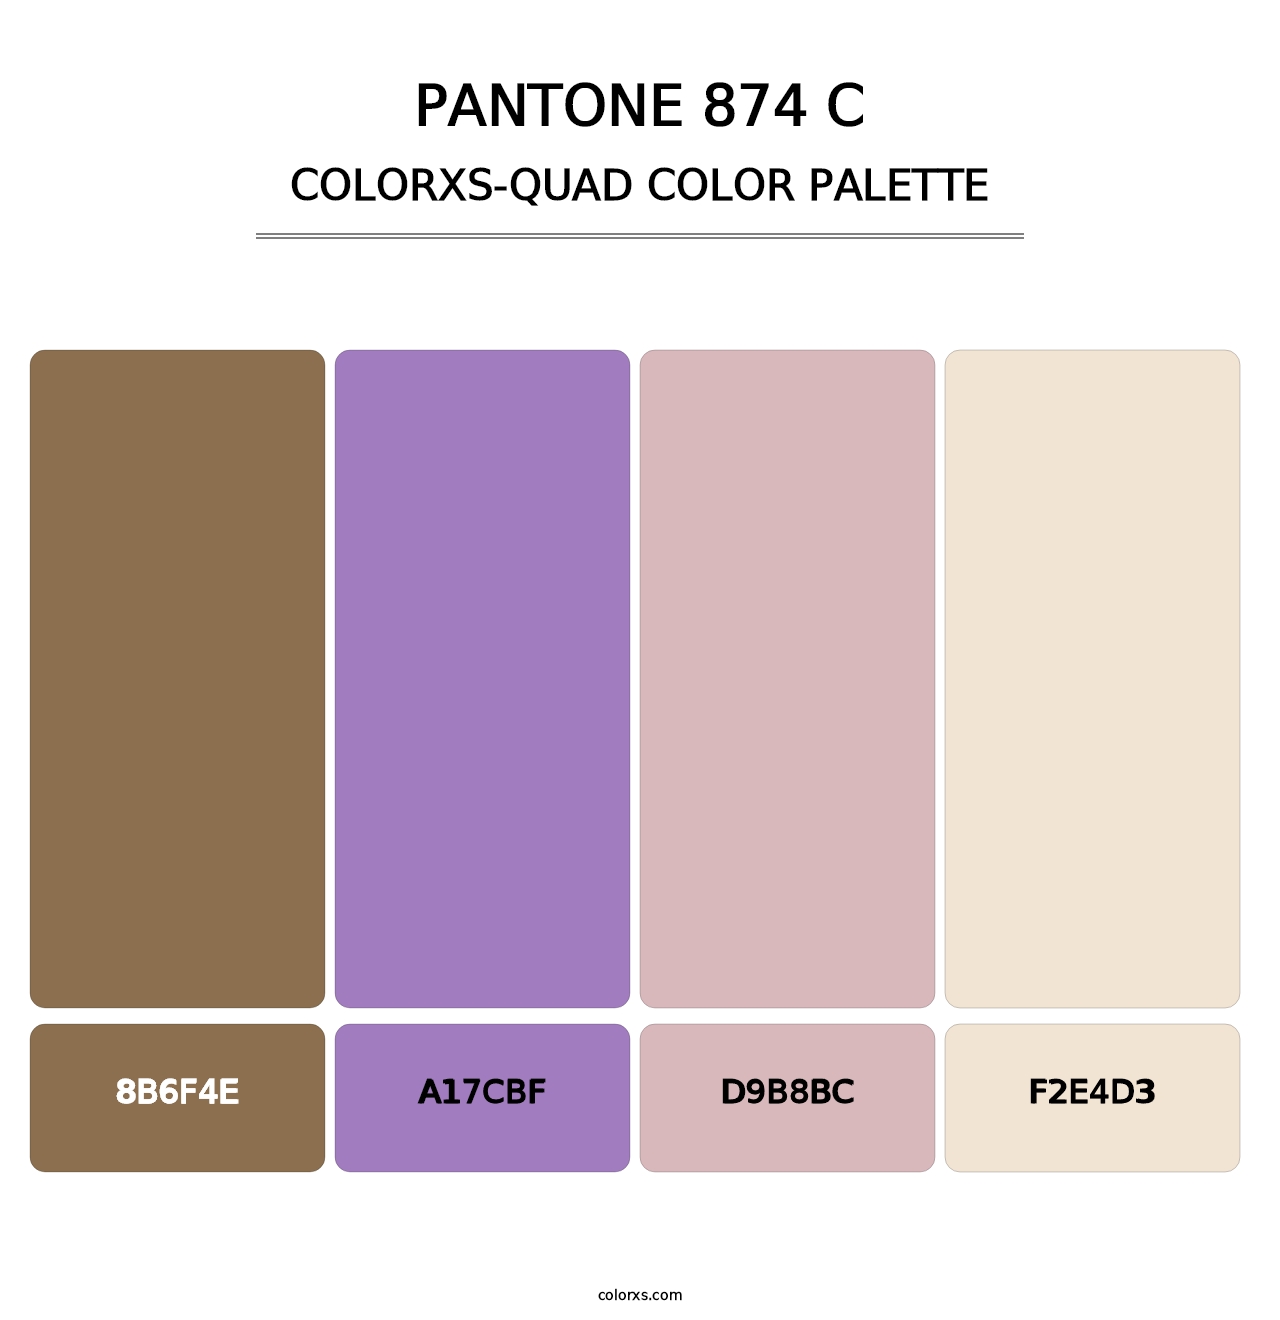 PANTONE 874 C - Colorxs Quad Palette